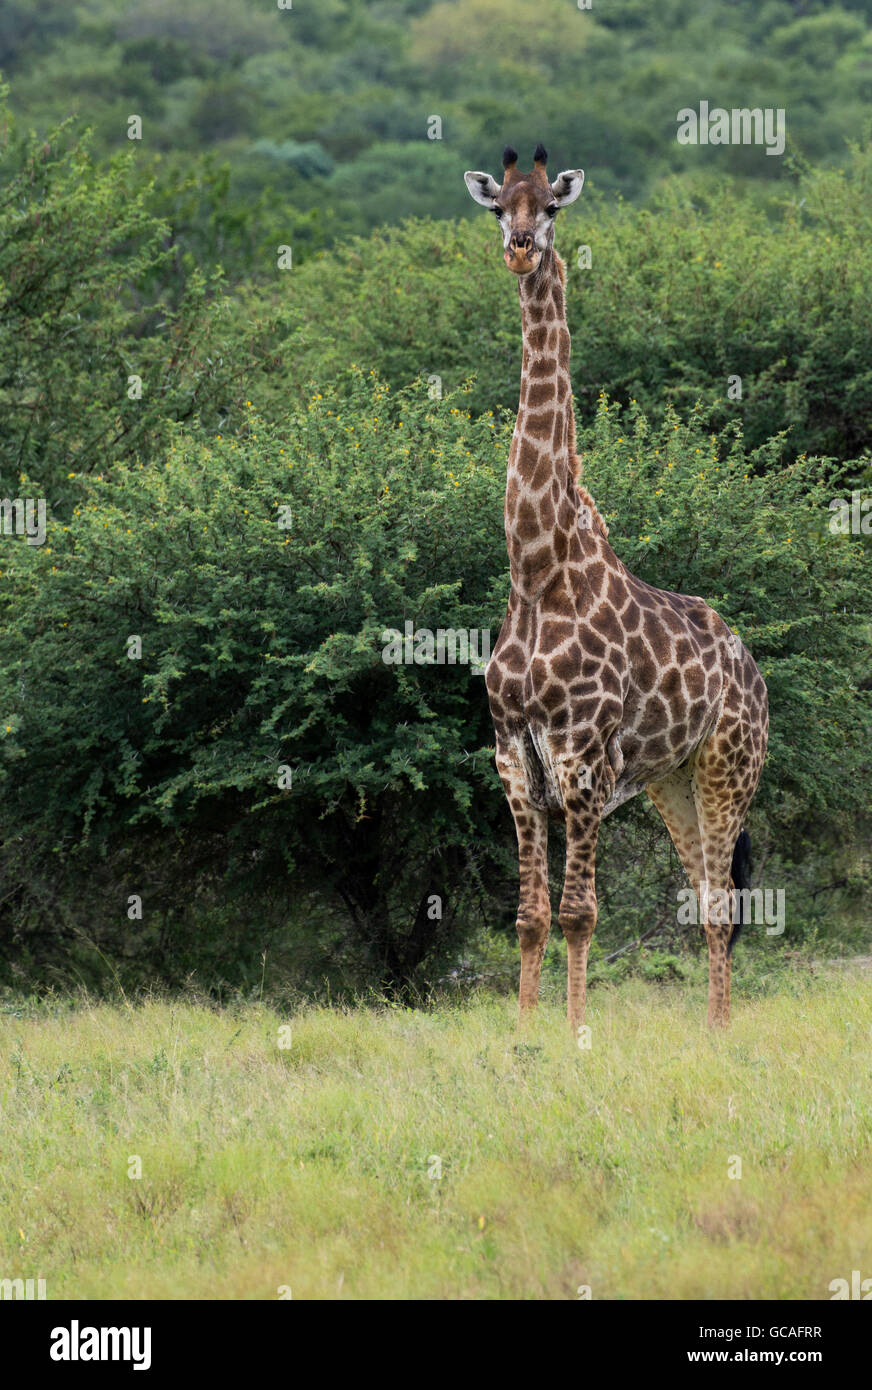 Girafe au cours de safari dans le parc national Kruger en Afrique du Sud Banque D'Images